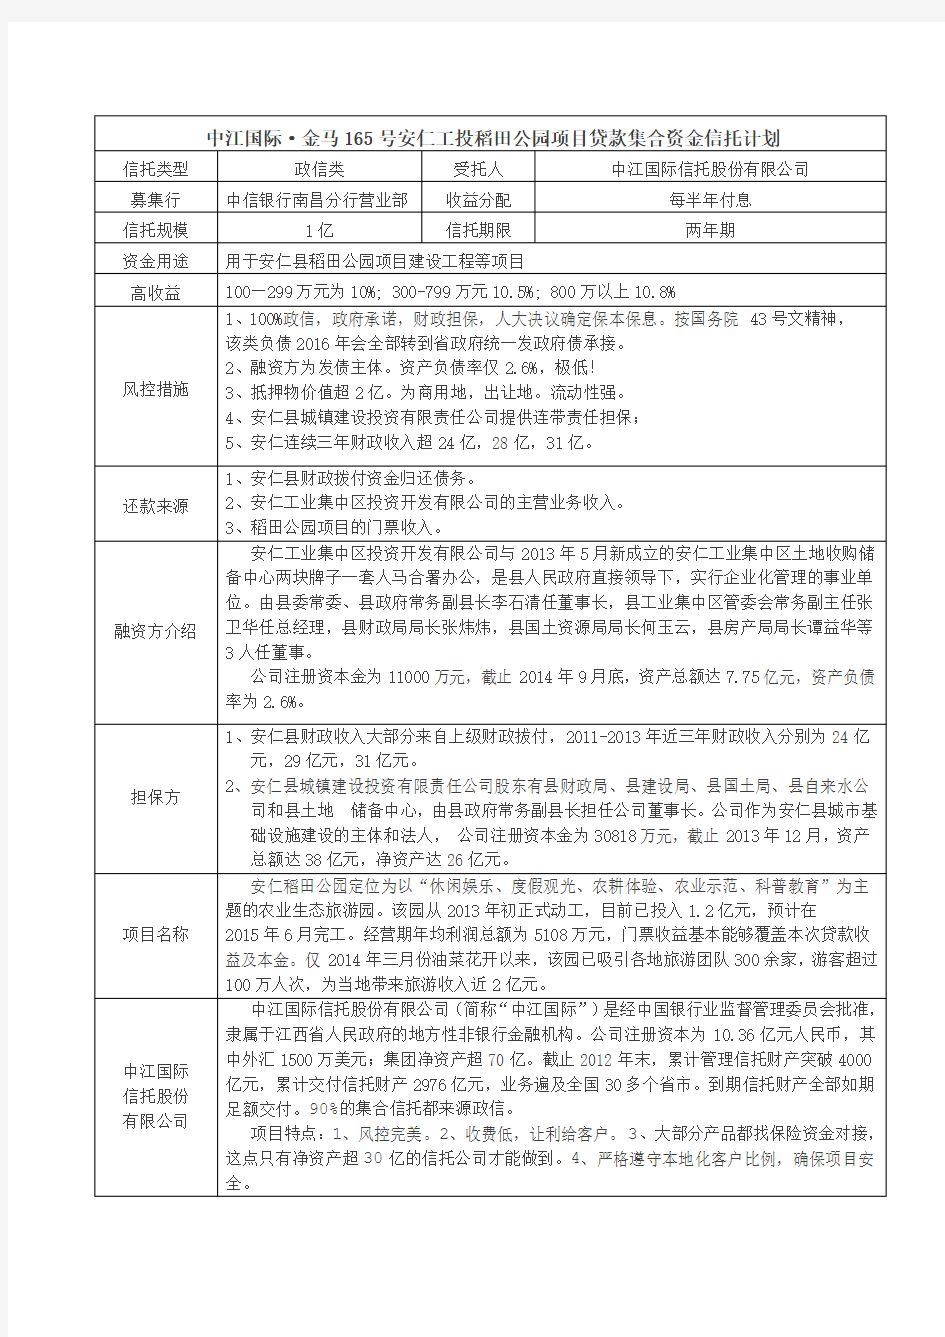 【简版】中江国际·金马165号安仁工投稻田公园项目贷款集合资金信托计划